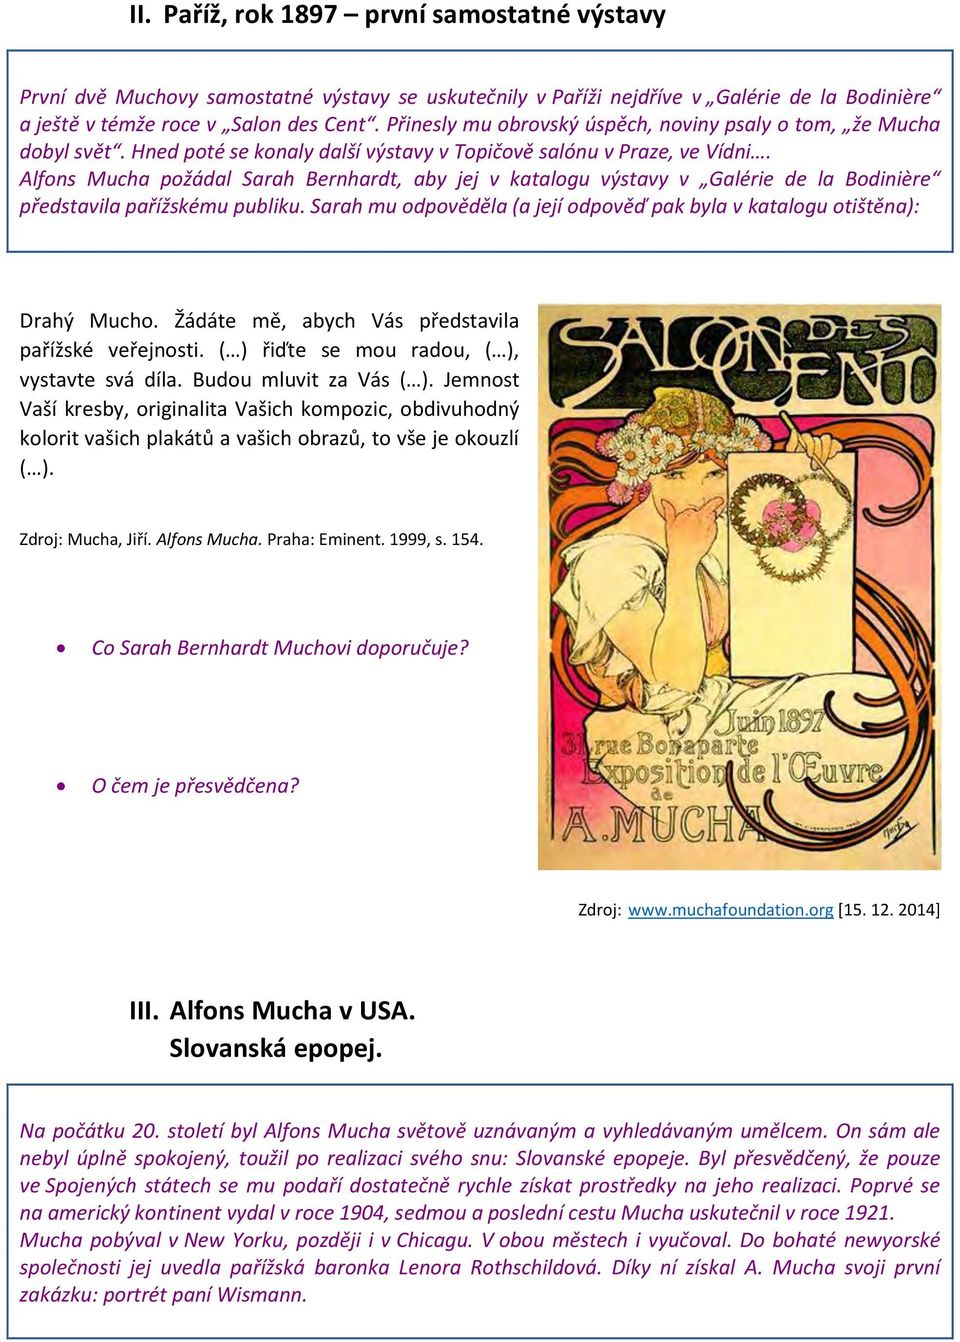 Alfons Mucha požádal Sarah Bernhardt, aby jej v katalogu výstavy v Galérie de la Bodinière představila pařížskému publiku.